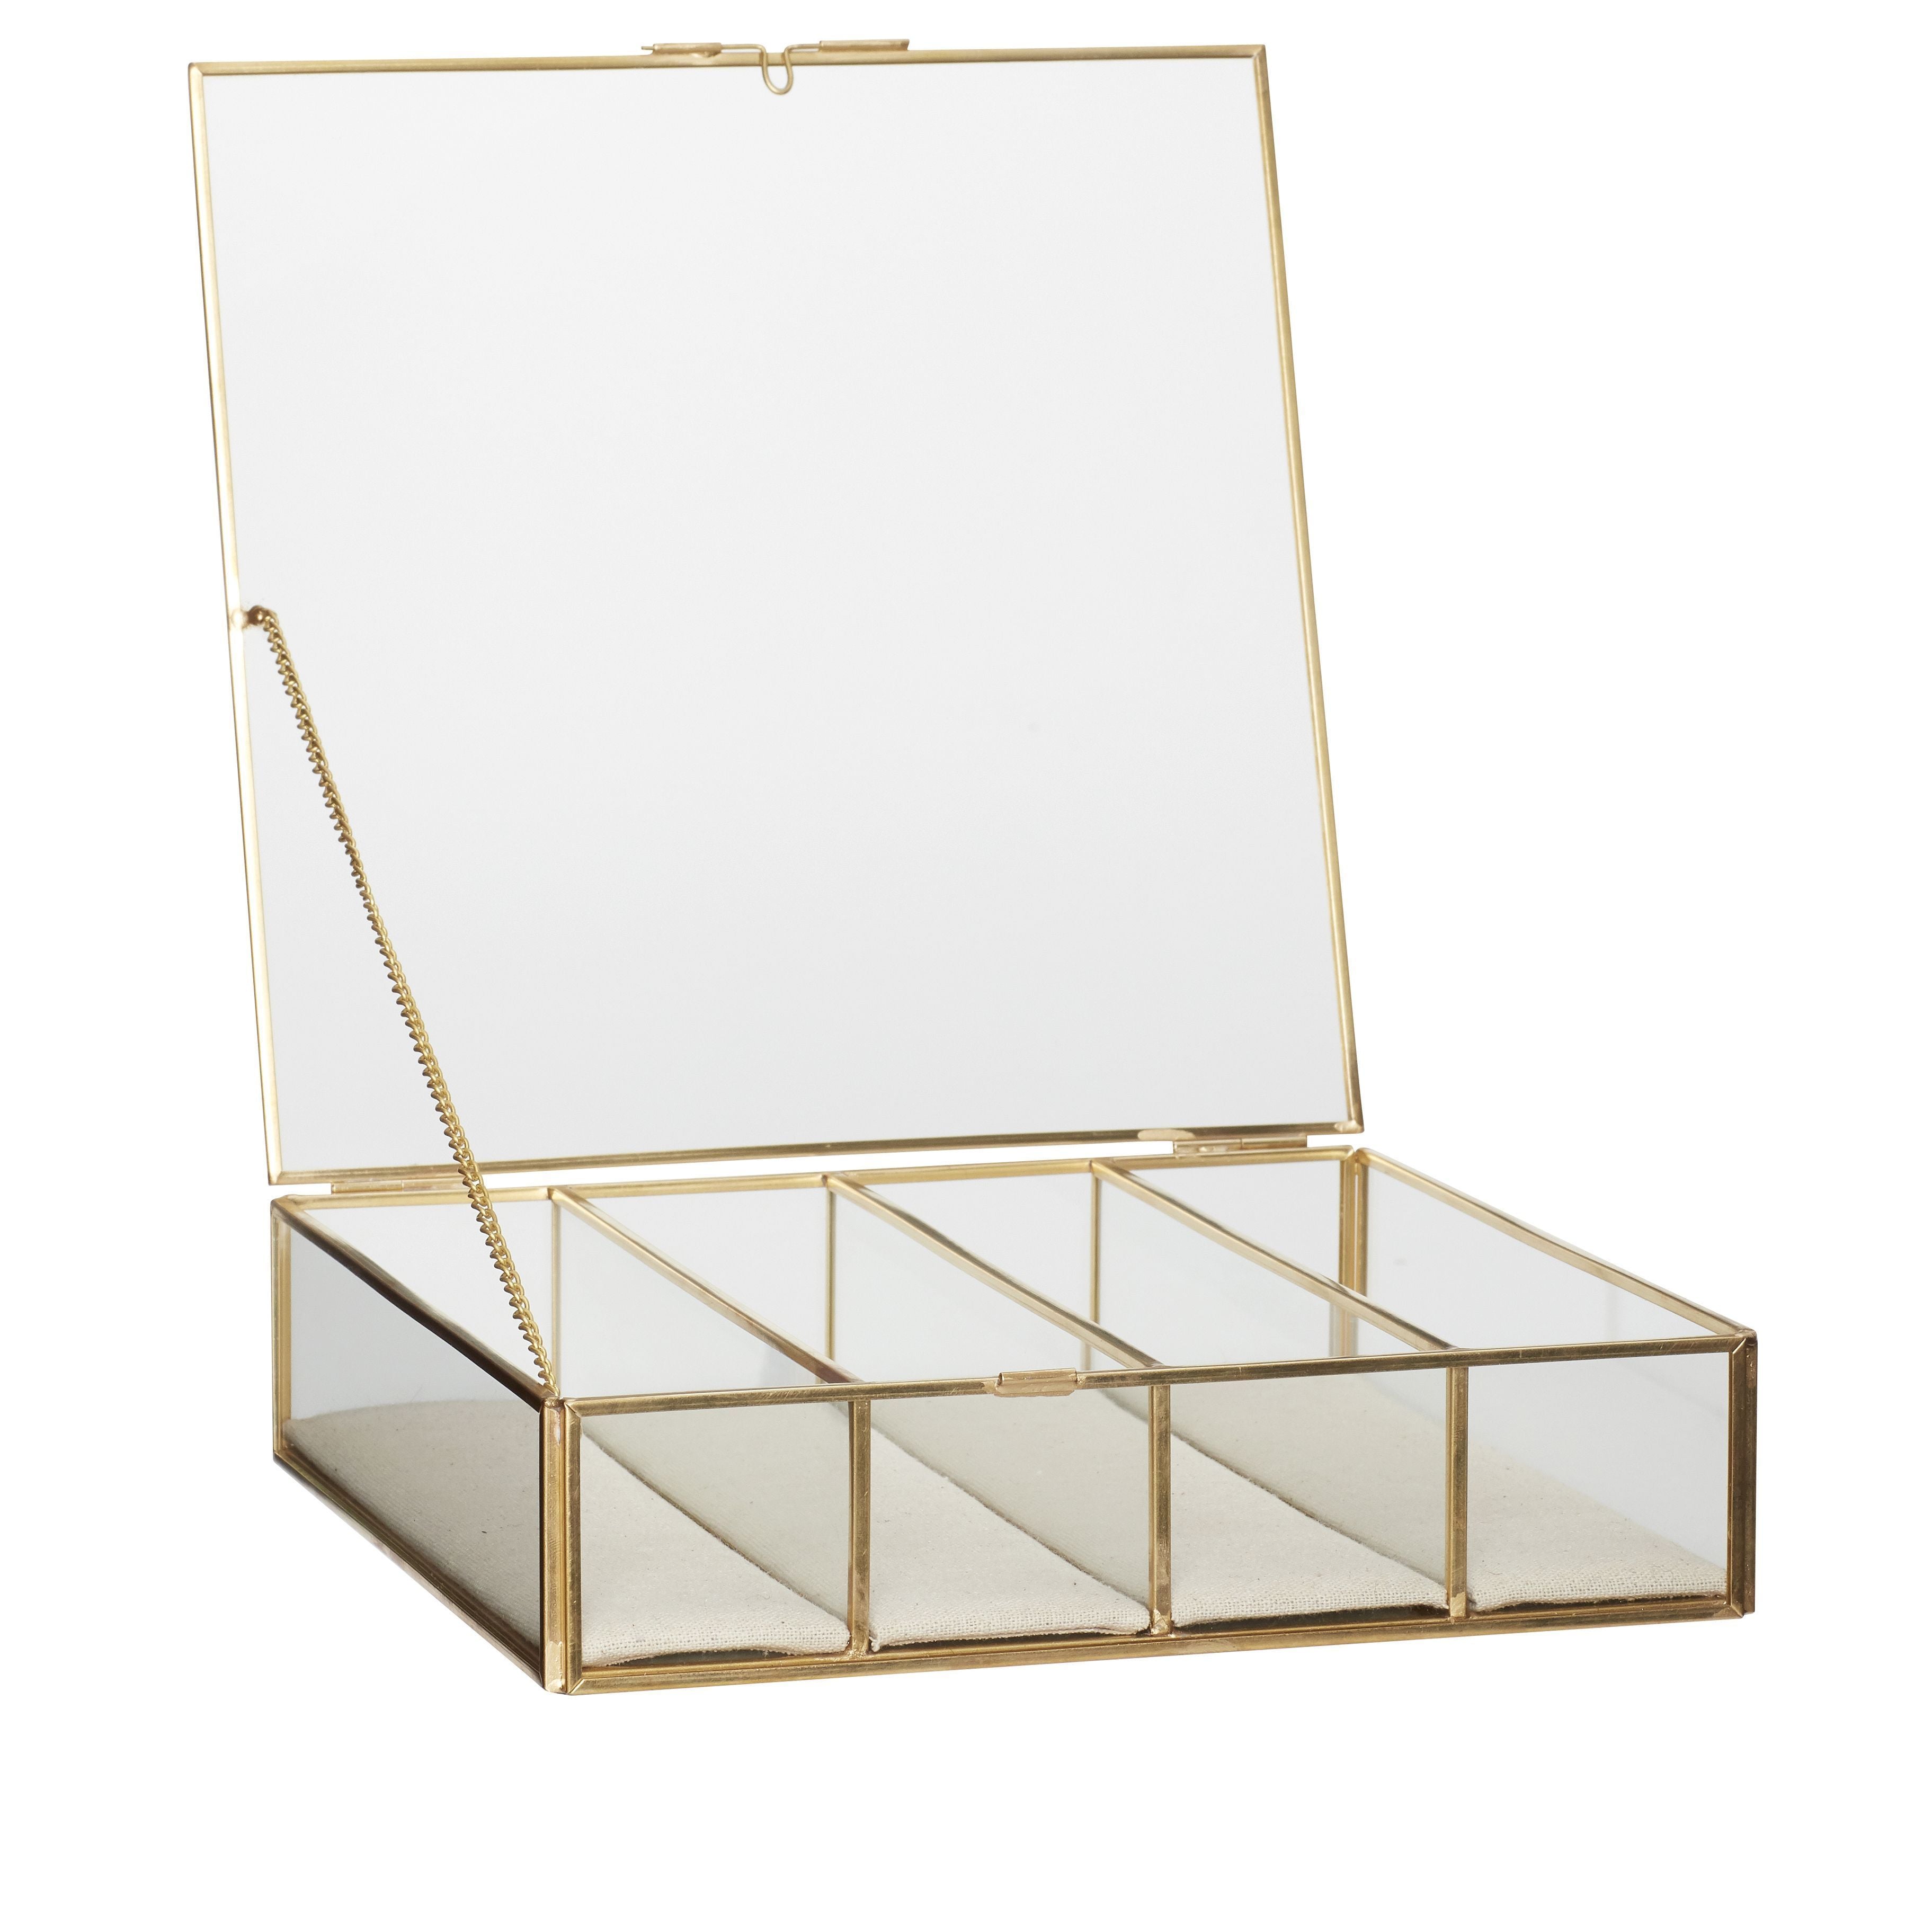 Hübsch Ecru Glass Box Glass/Canvas/Metal Clear/Beige/Brass S/3